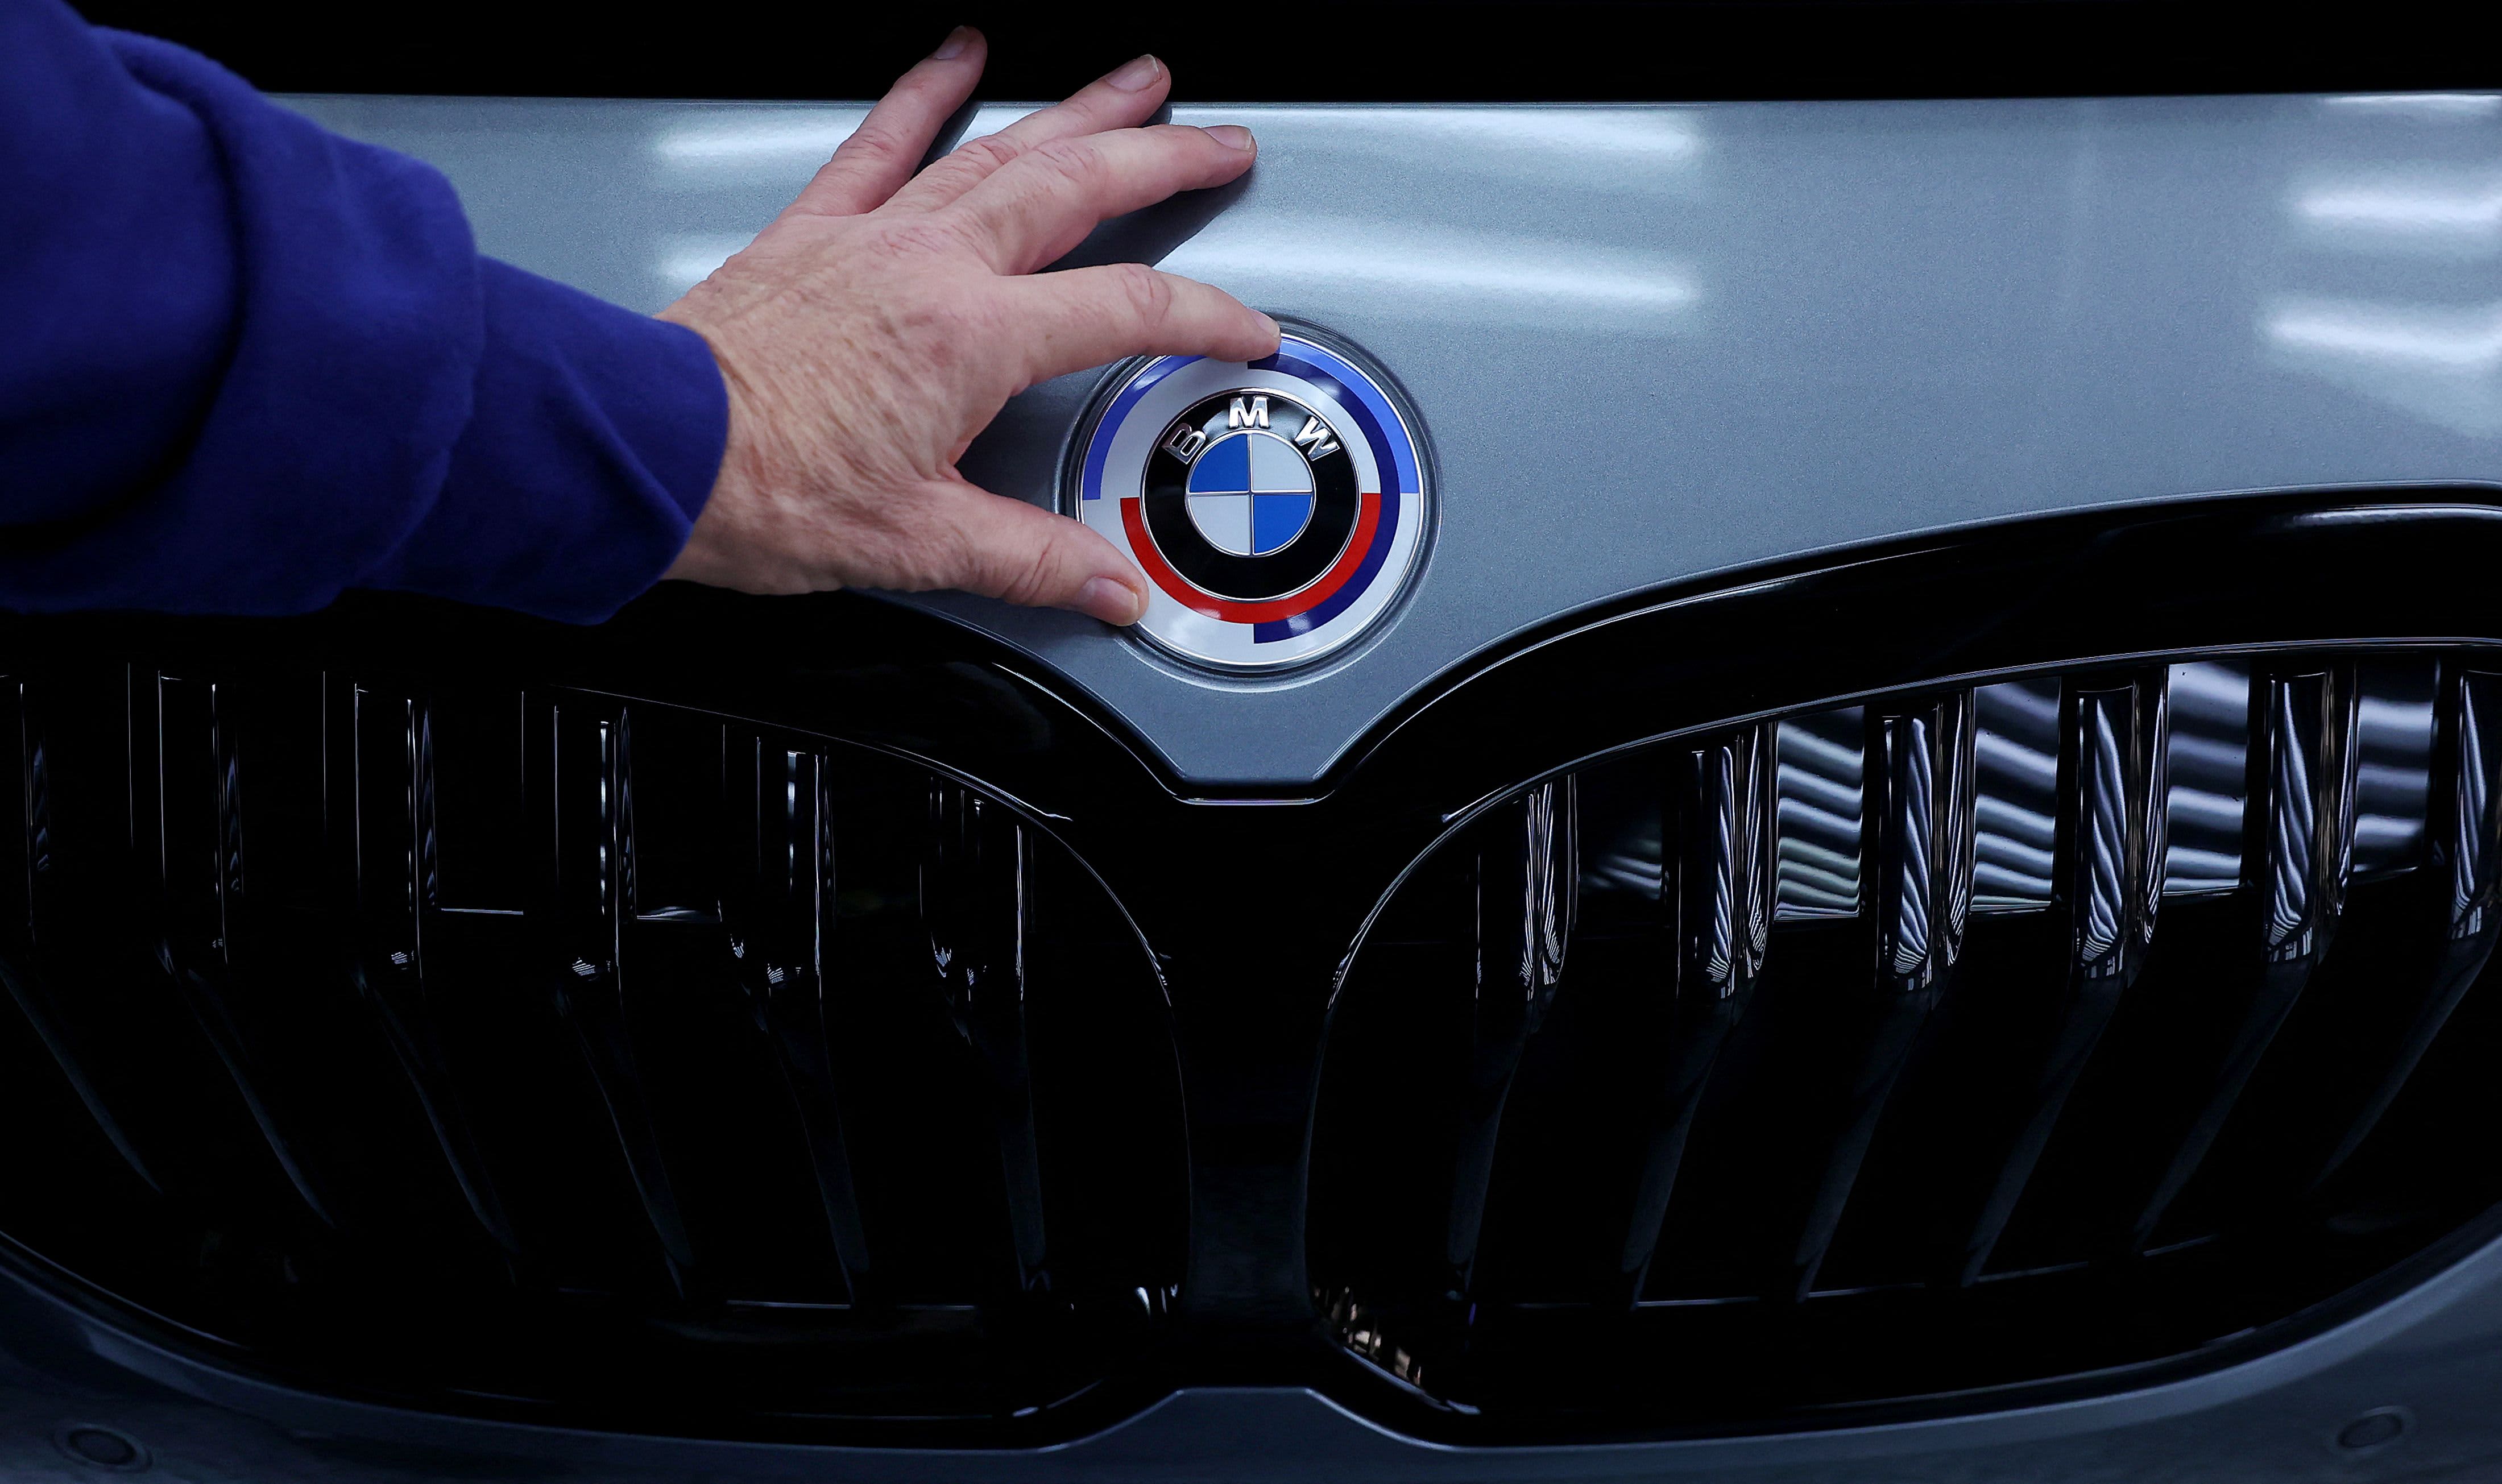 Új elektromos autót mutatott be a BMW német autógyártó